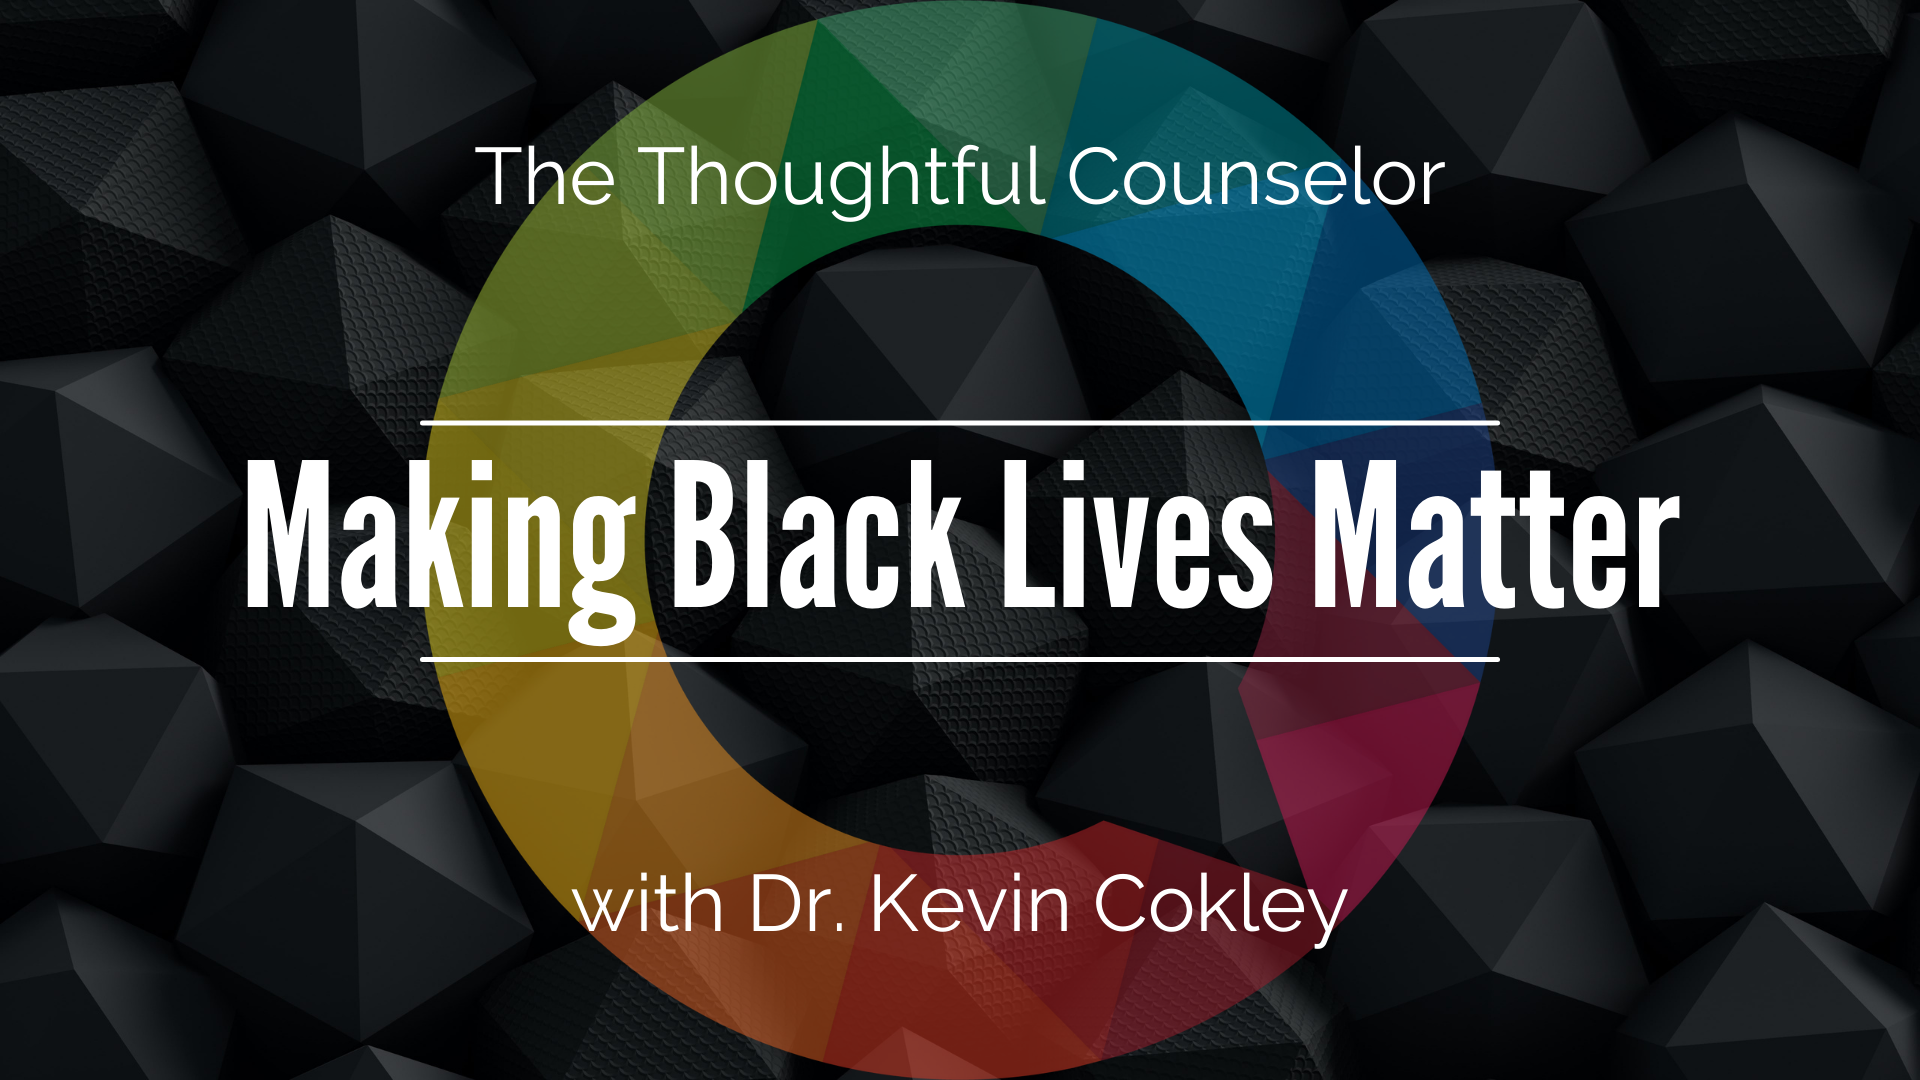 Making Black Lives Matter and Understanding Cultural Mistrust